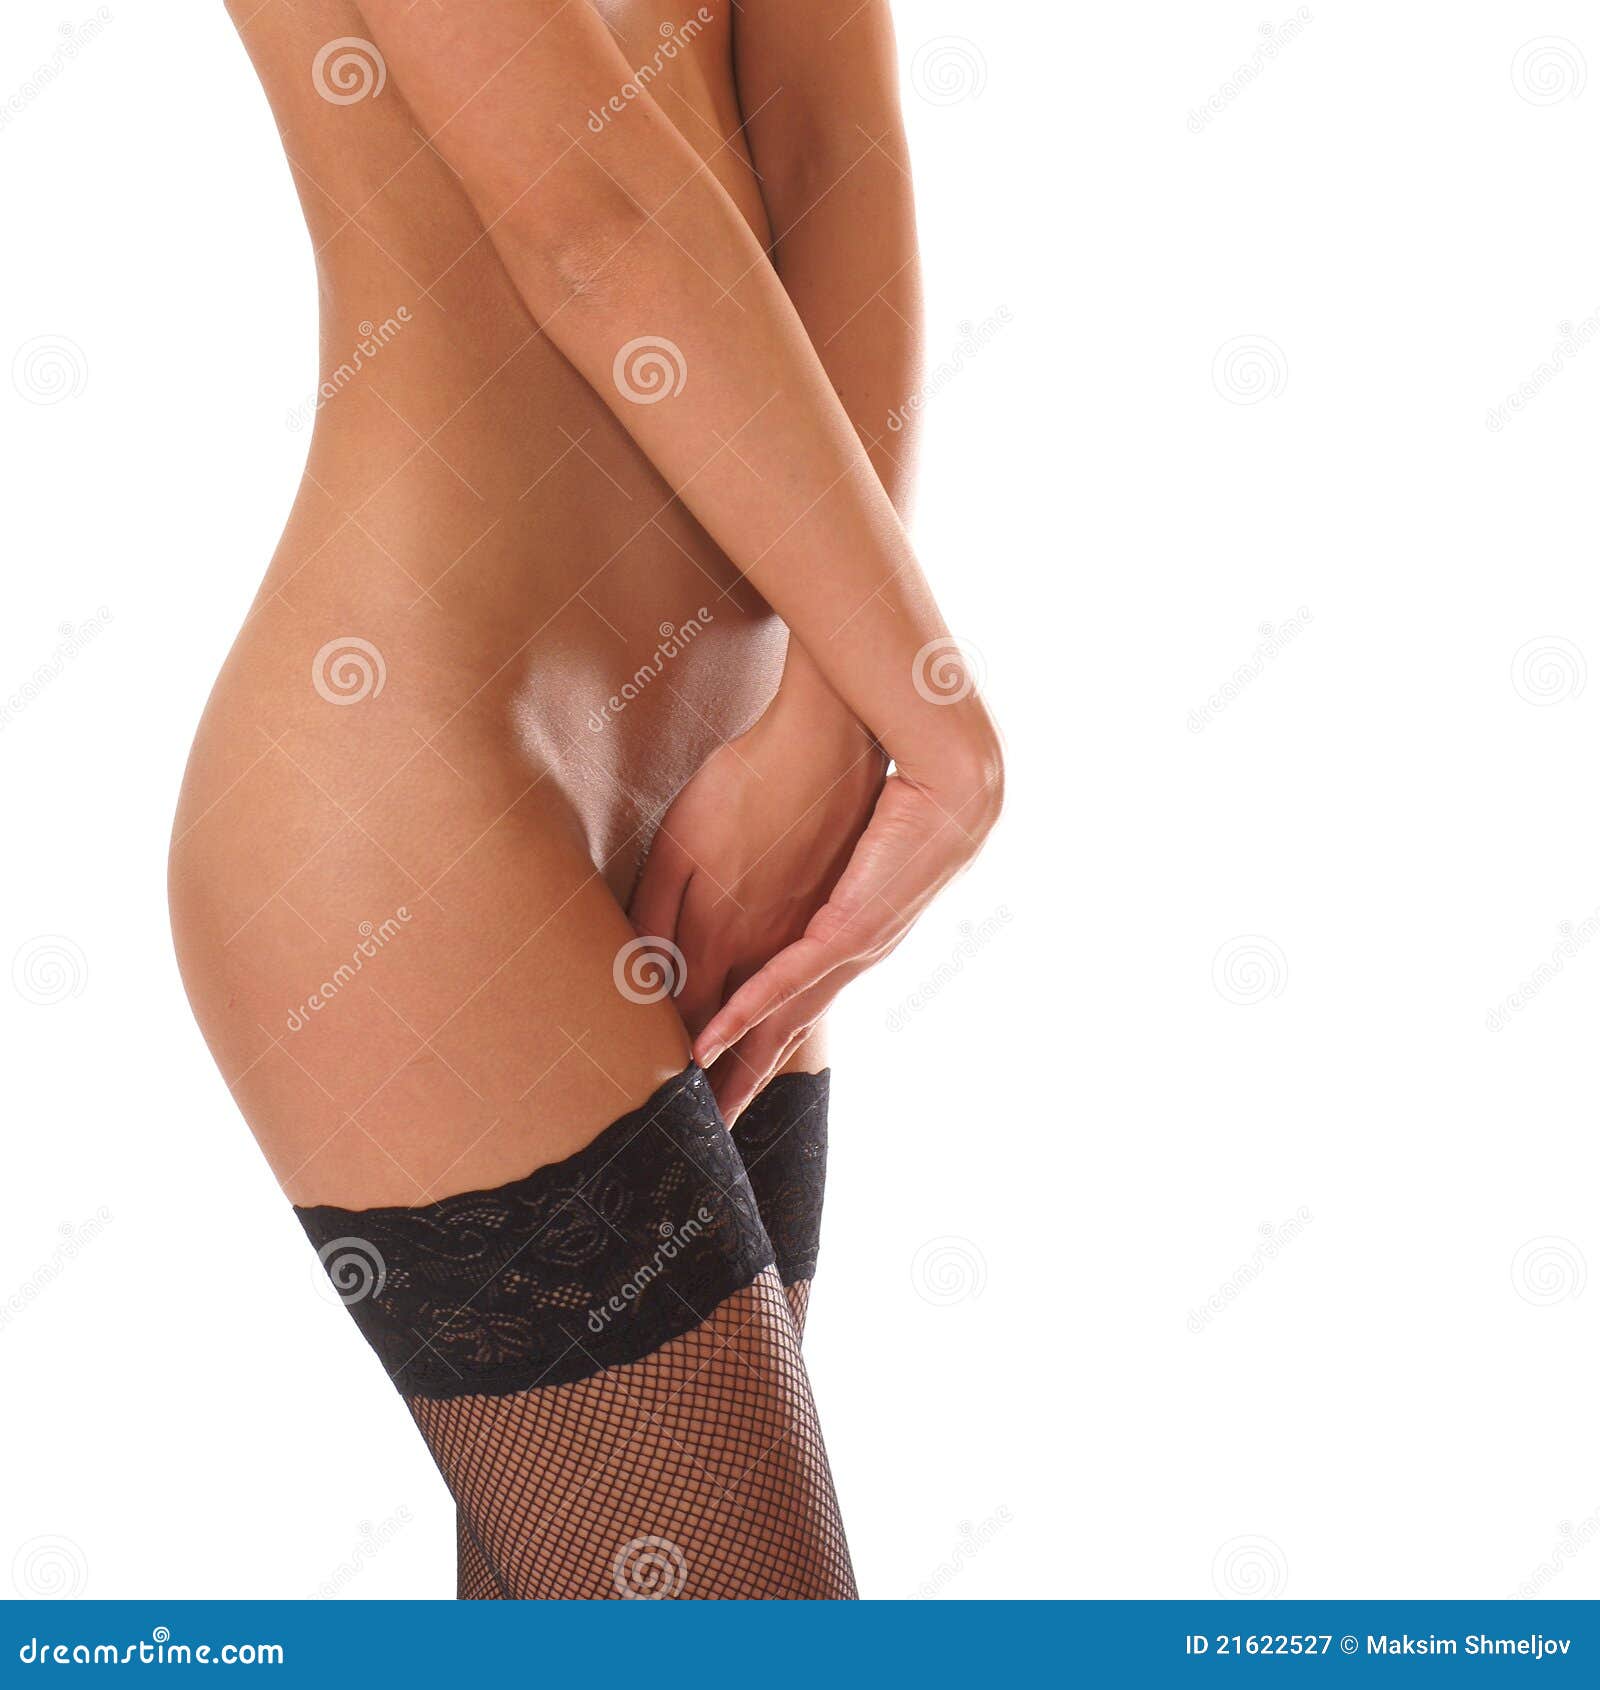 nude women in stockings